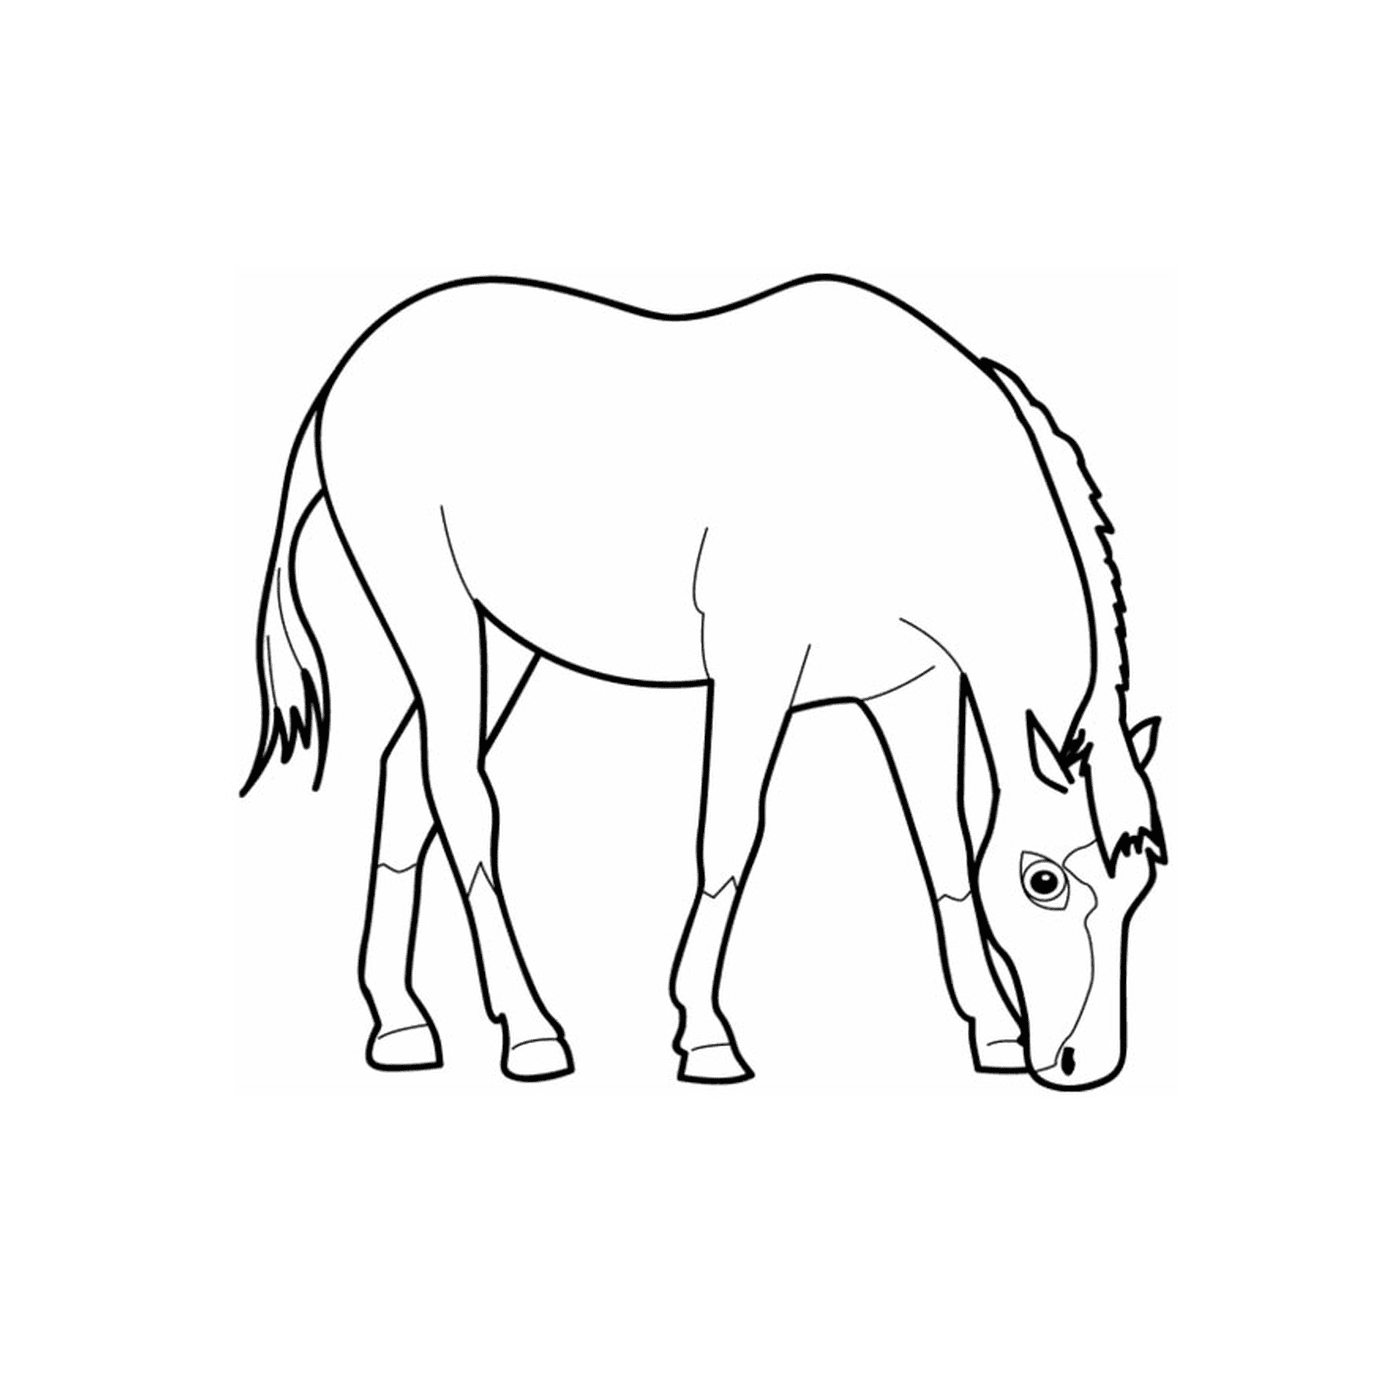  Одинокая лошадь - смотрящая лошадь 